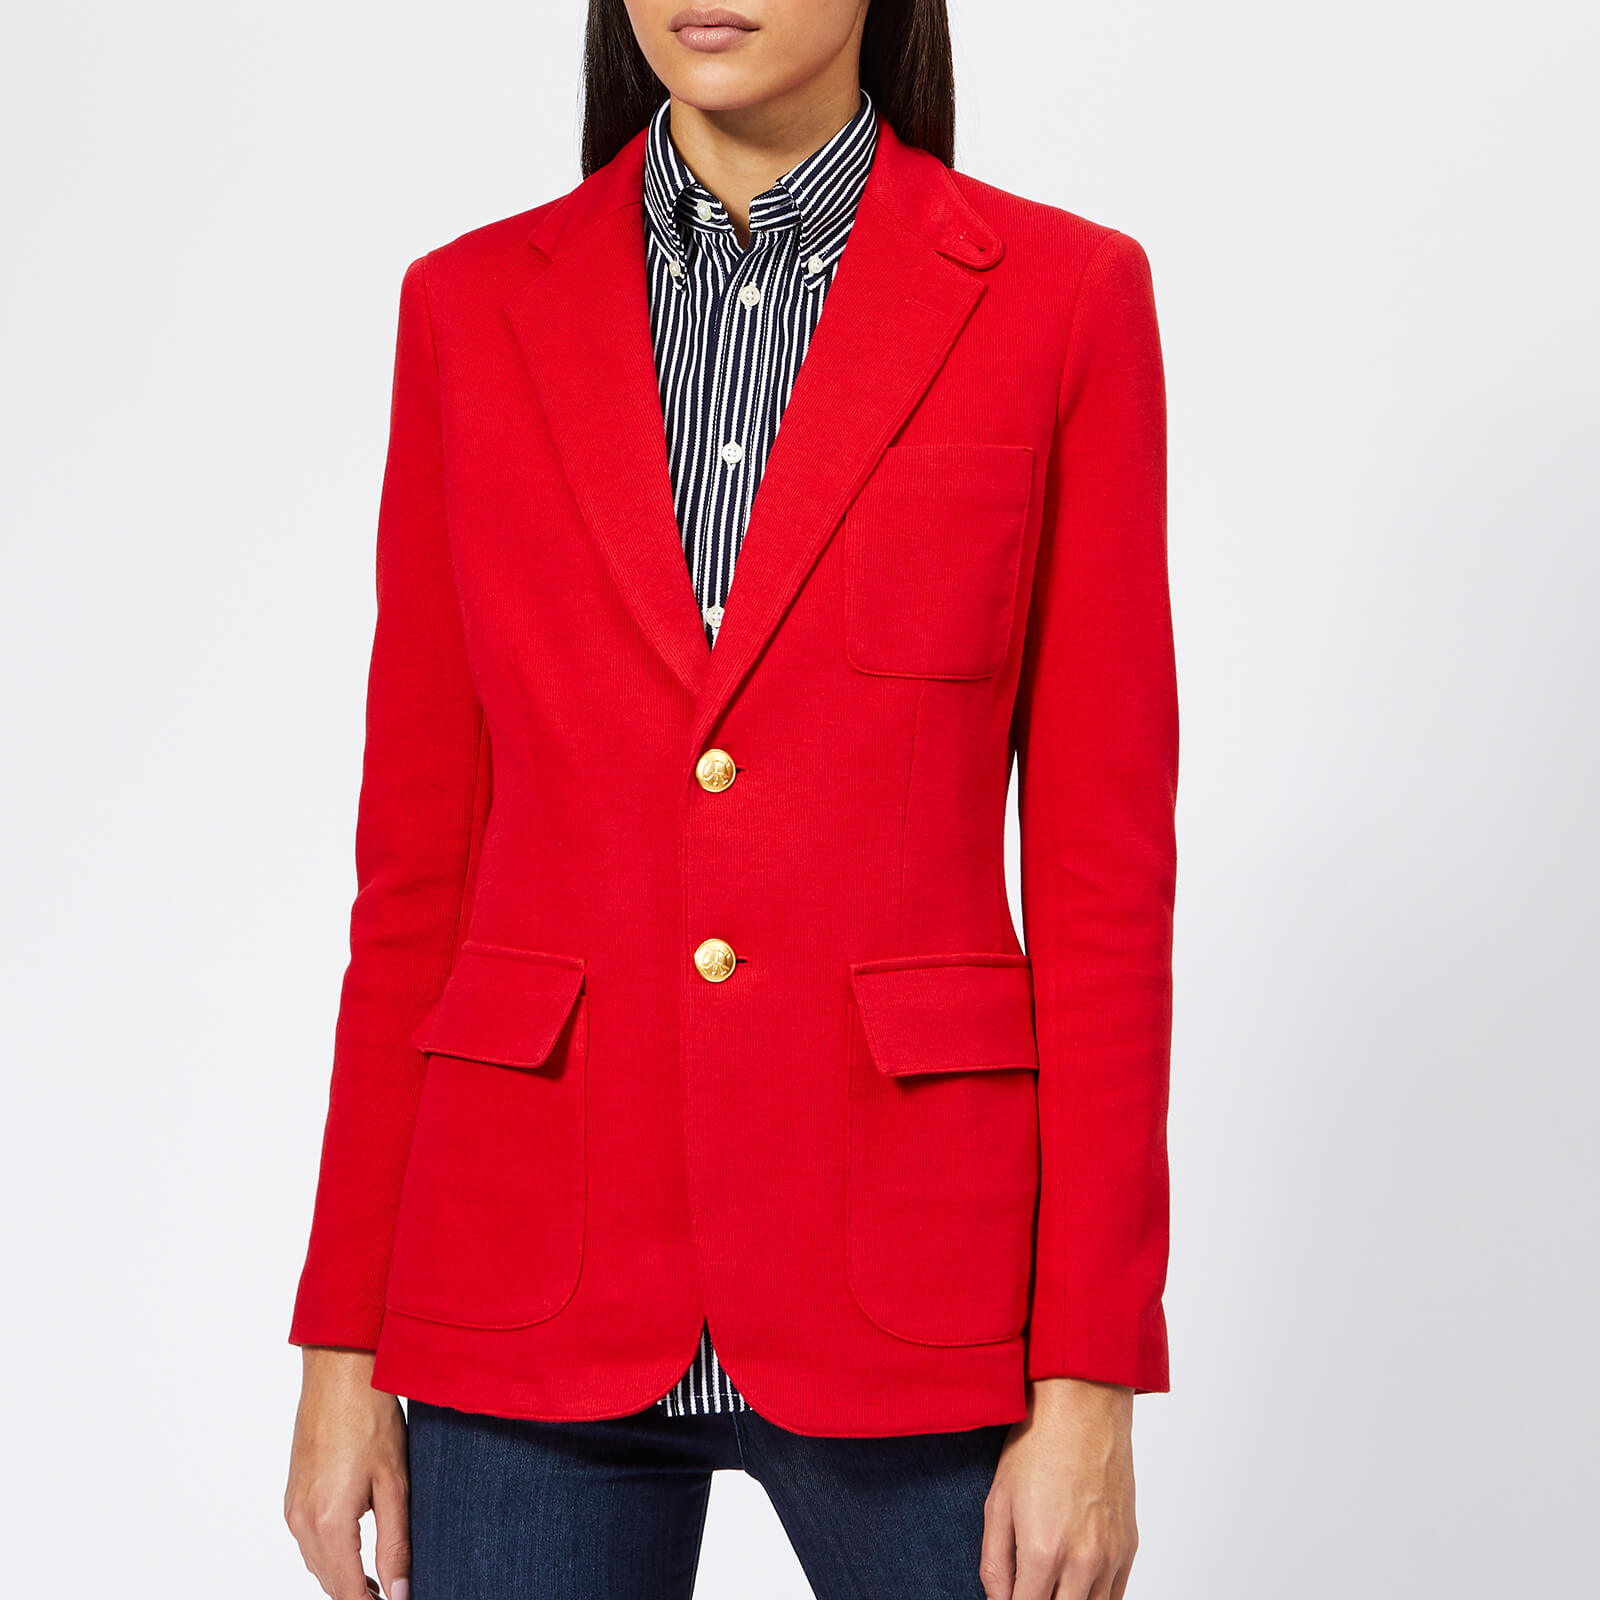 polo ralph lauren red jacket